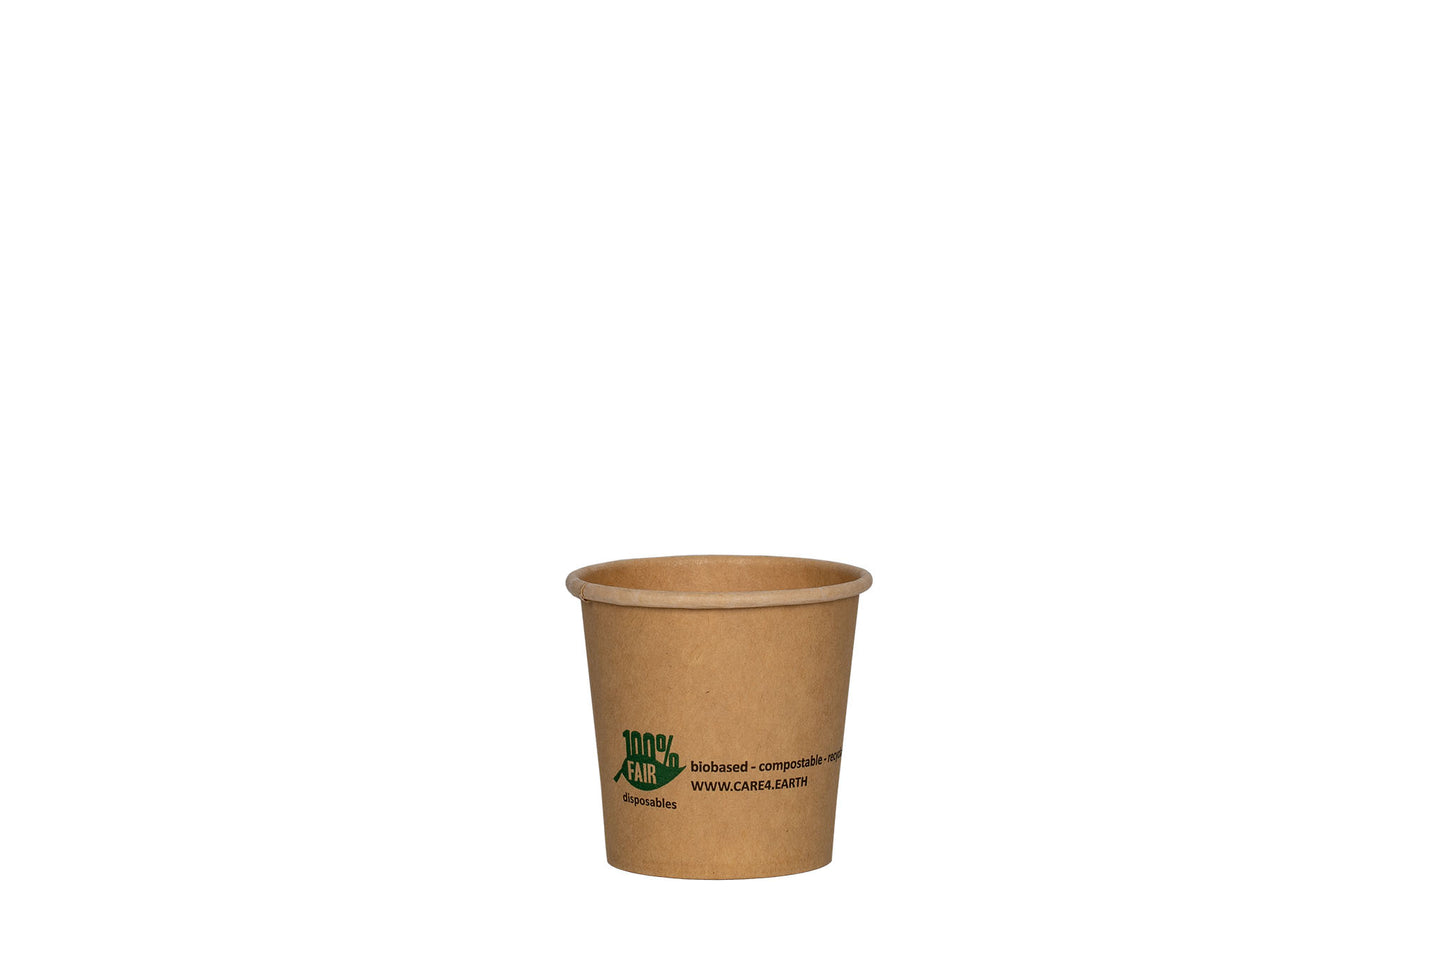 Soßen- und Dippbecher, Pappe, braun, rund, 90 ml, 3oz, ⌀ 6,1 cm, Höhe 5,8 cm, kompostierbar nach DIN EN 13432